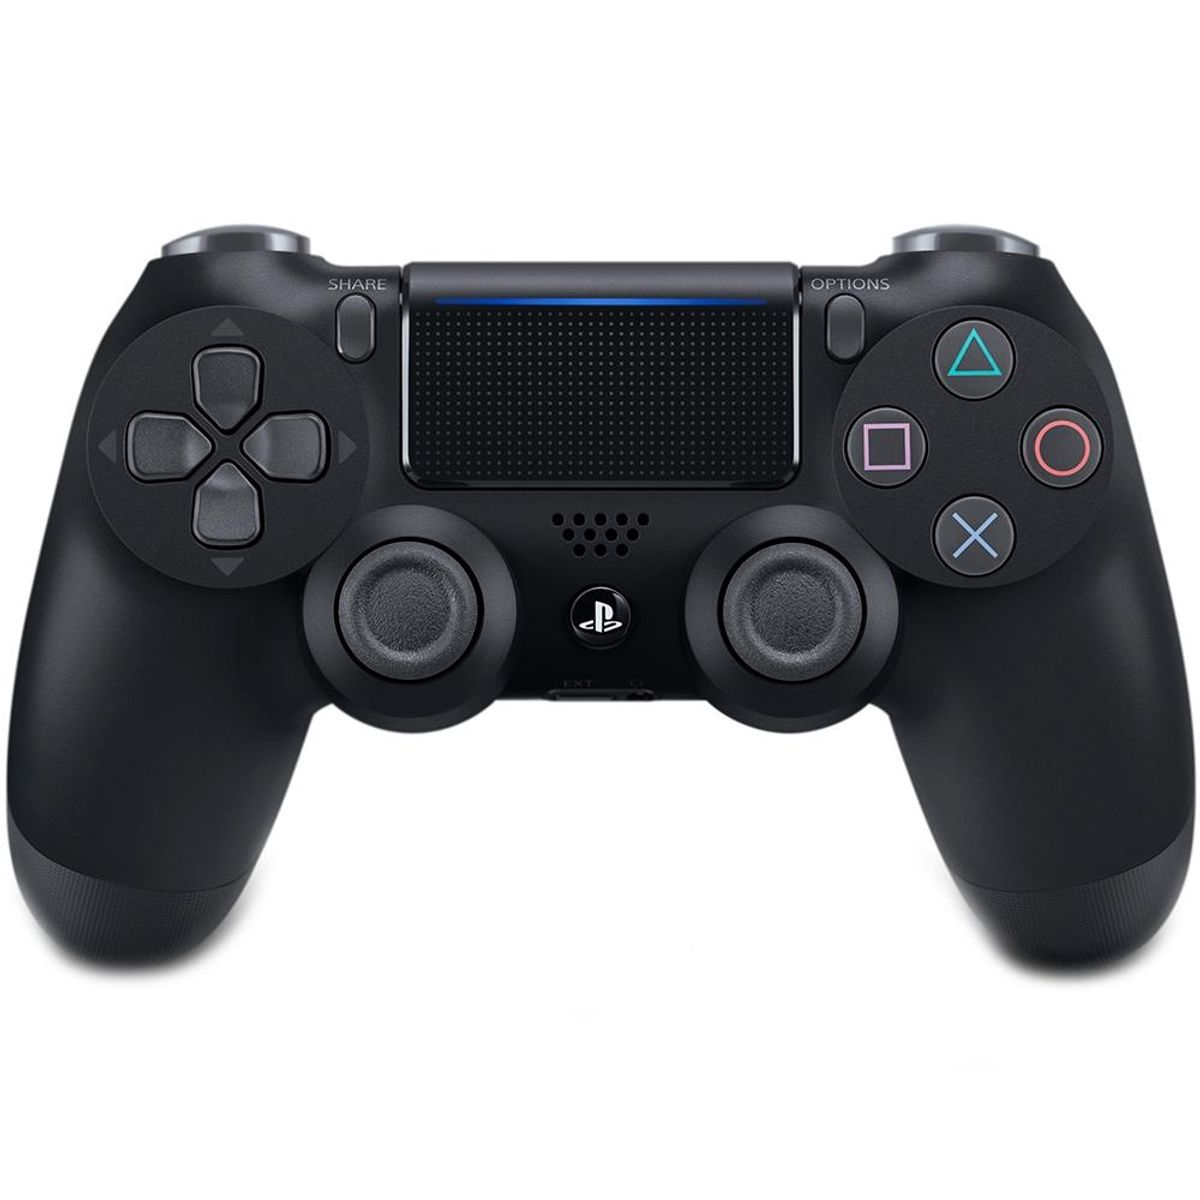 O PlayStation e sua ligação paralela com o Plano Real